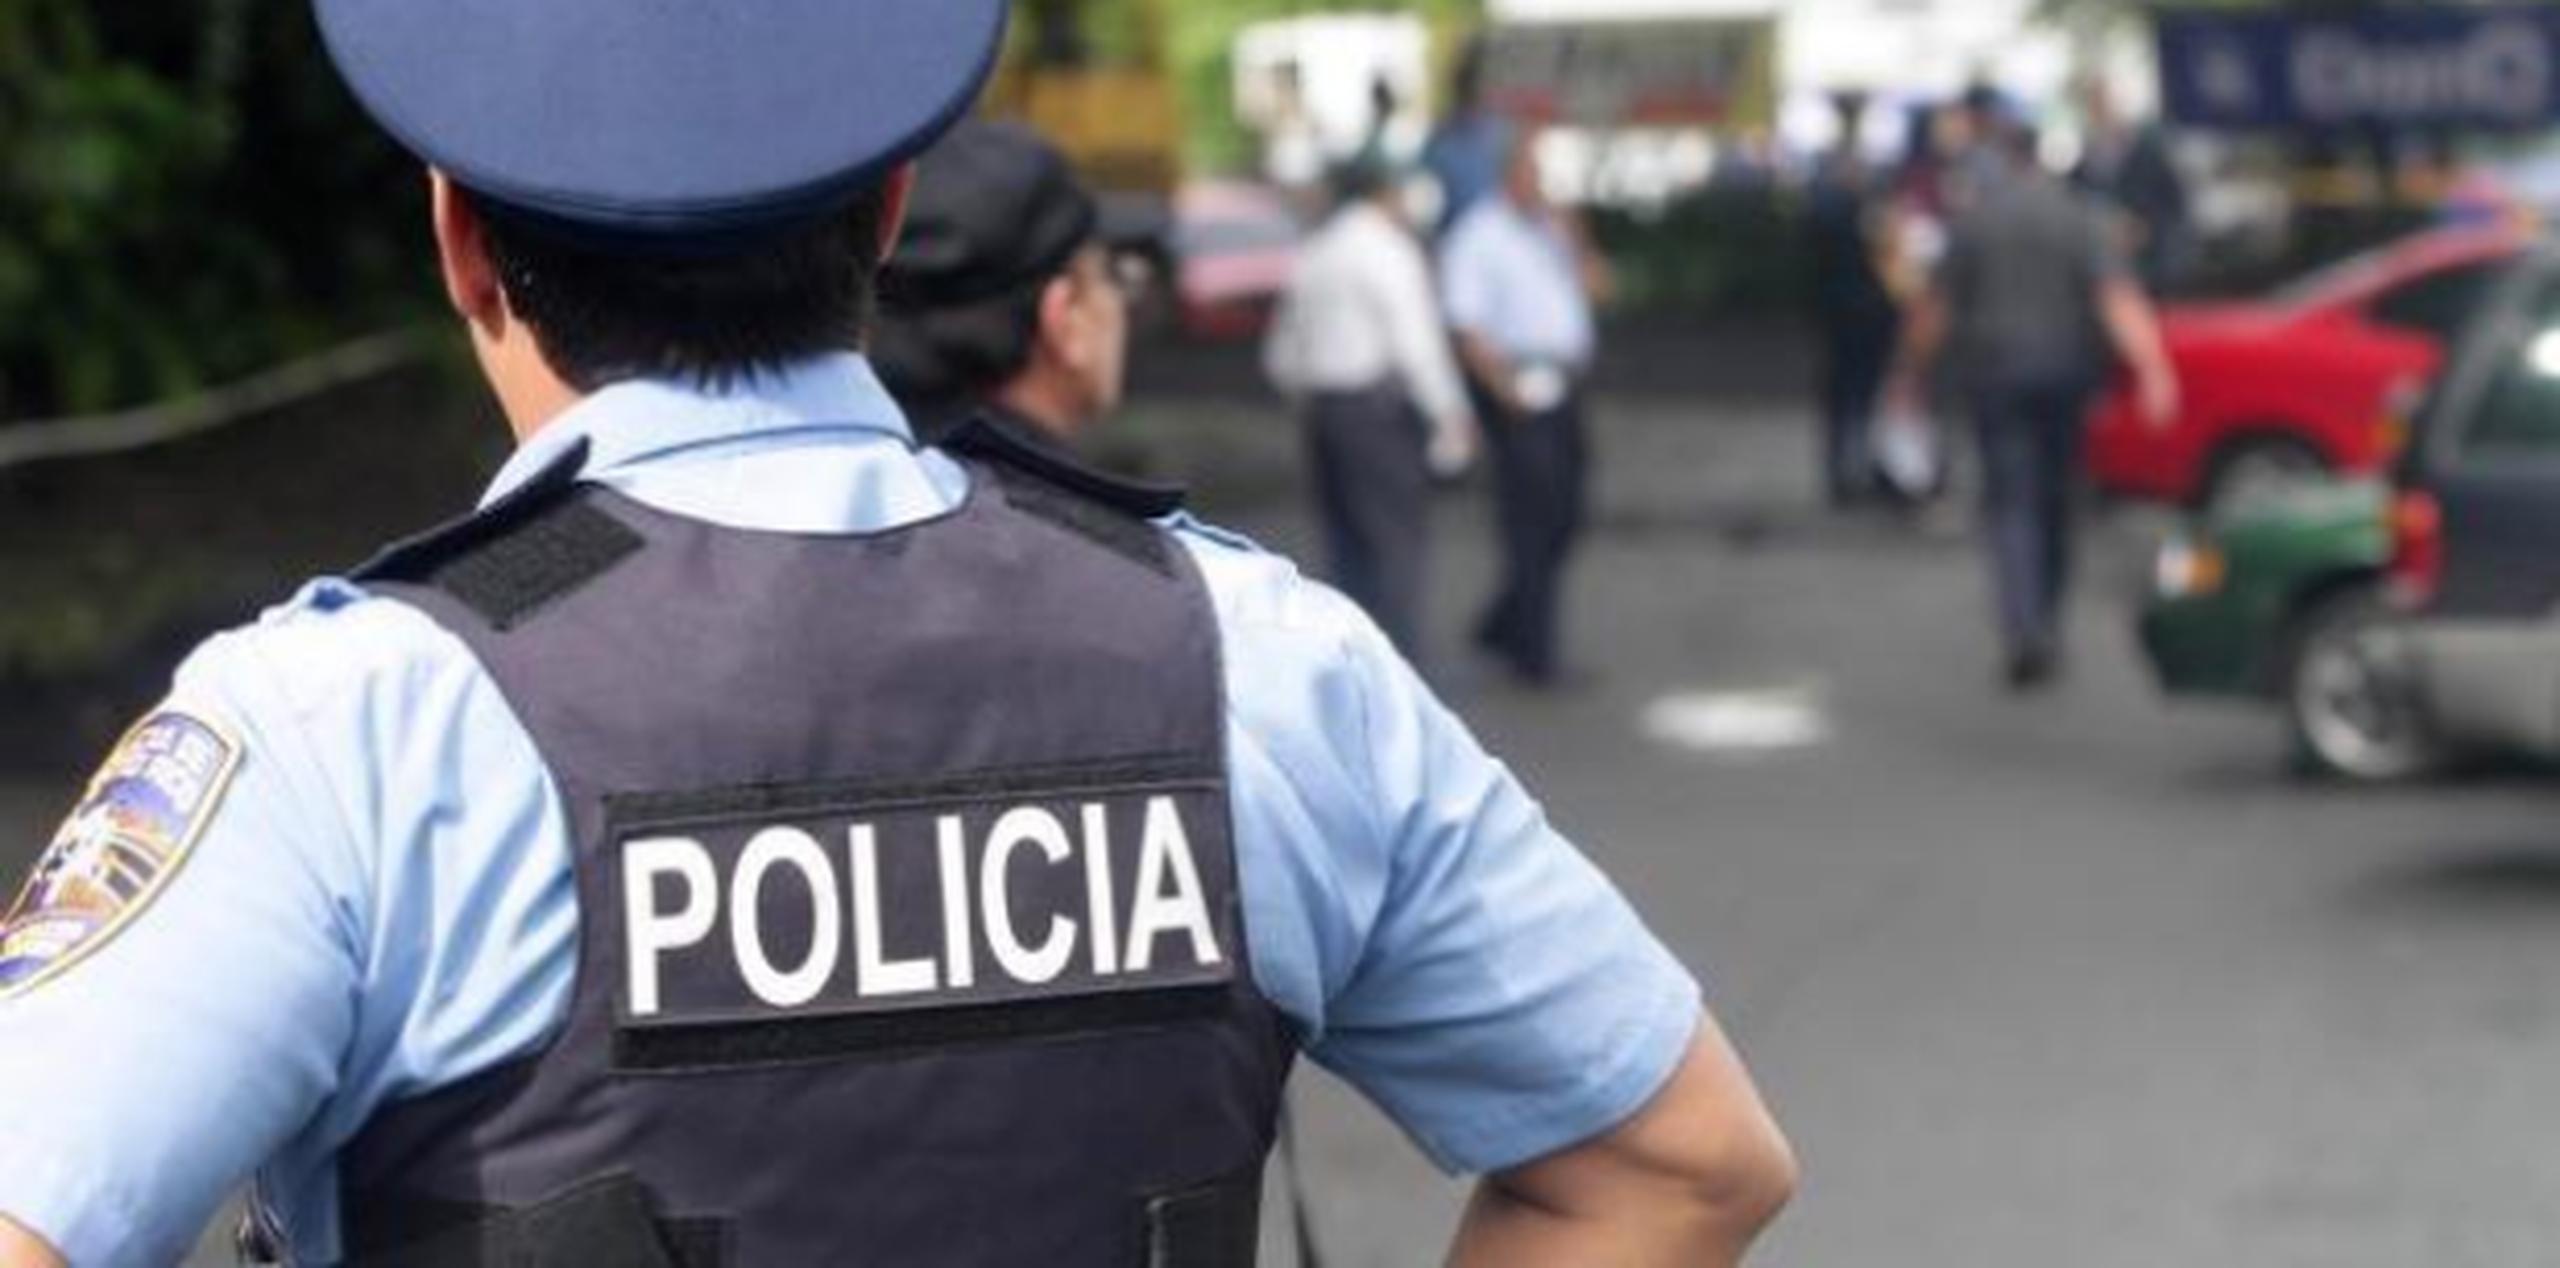 Según la Policía, los sospechosos -todos con antecedentes- son del residencial Nuestra Señora de Covadonga en Trujillo Alto.